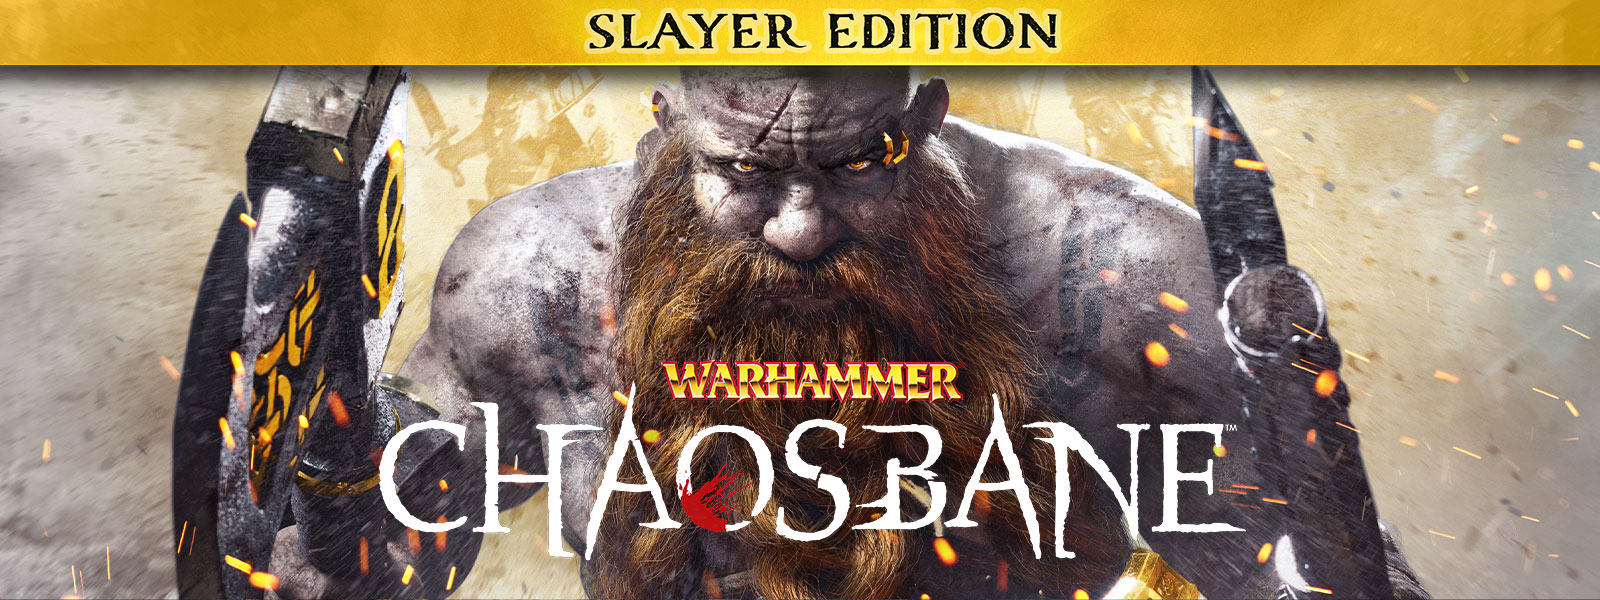 Warhammer: Chaosbane, Slayer Edition, Szakállas férfi lépked tüzes szikraözönben, mindkét kezében bárddal.